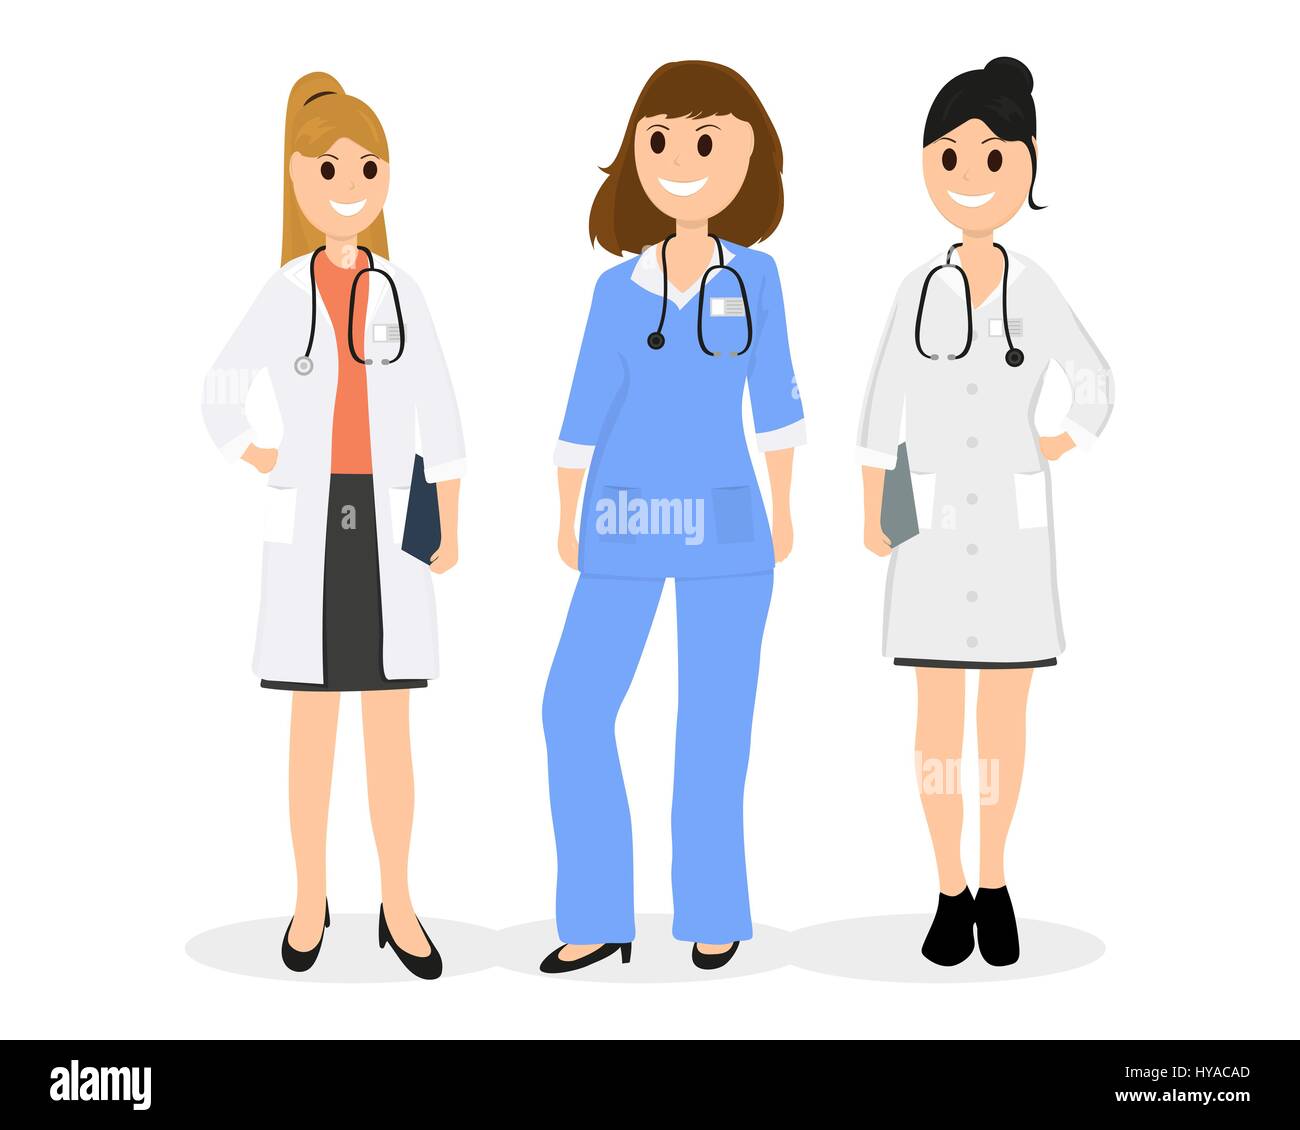 Group of women doctors Stock Vector